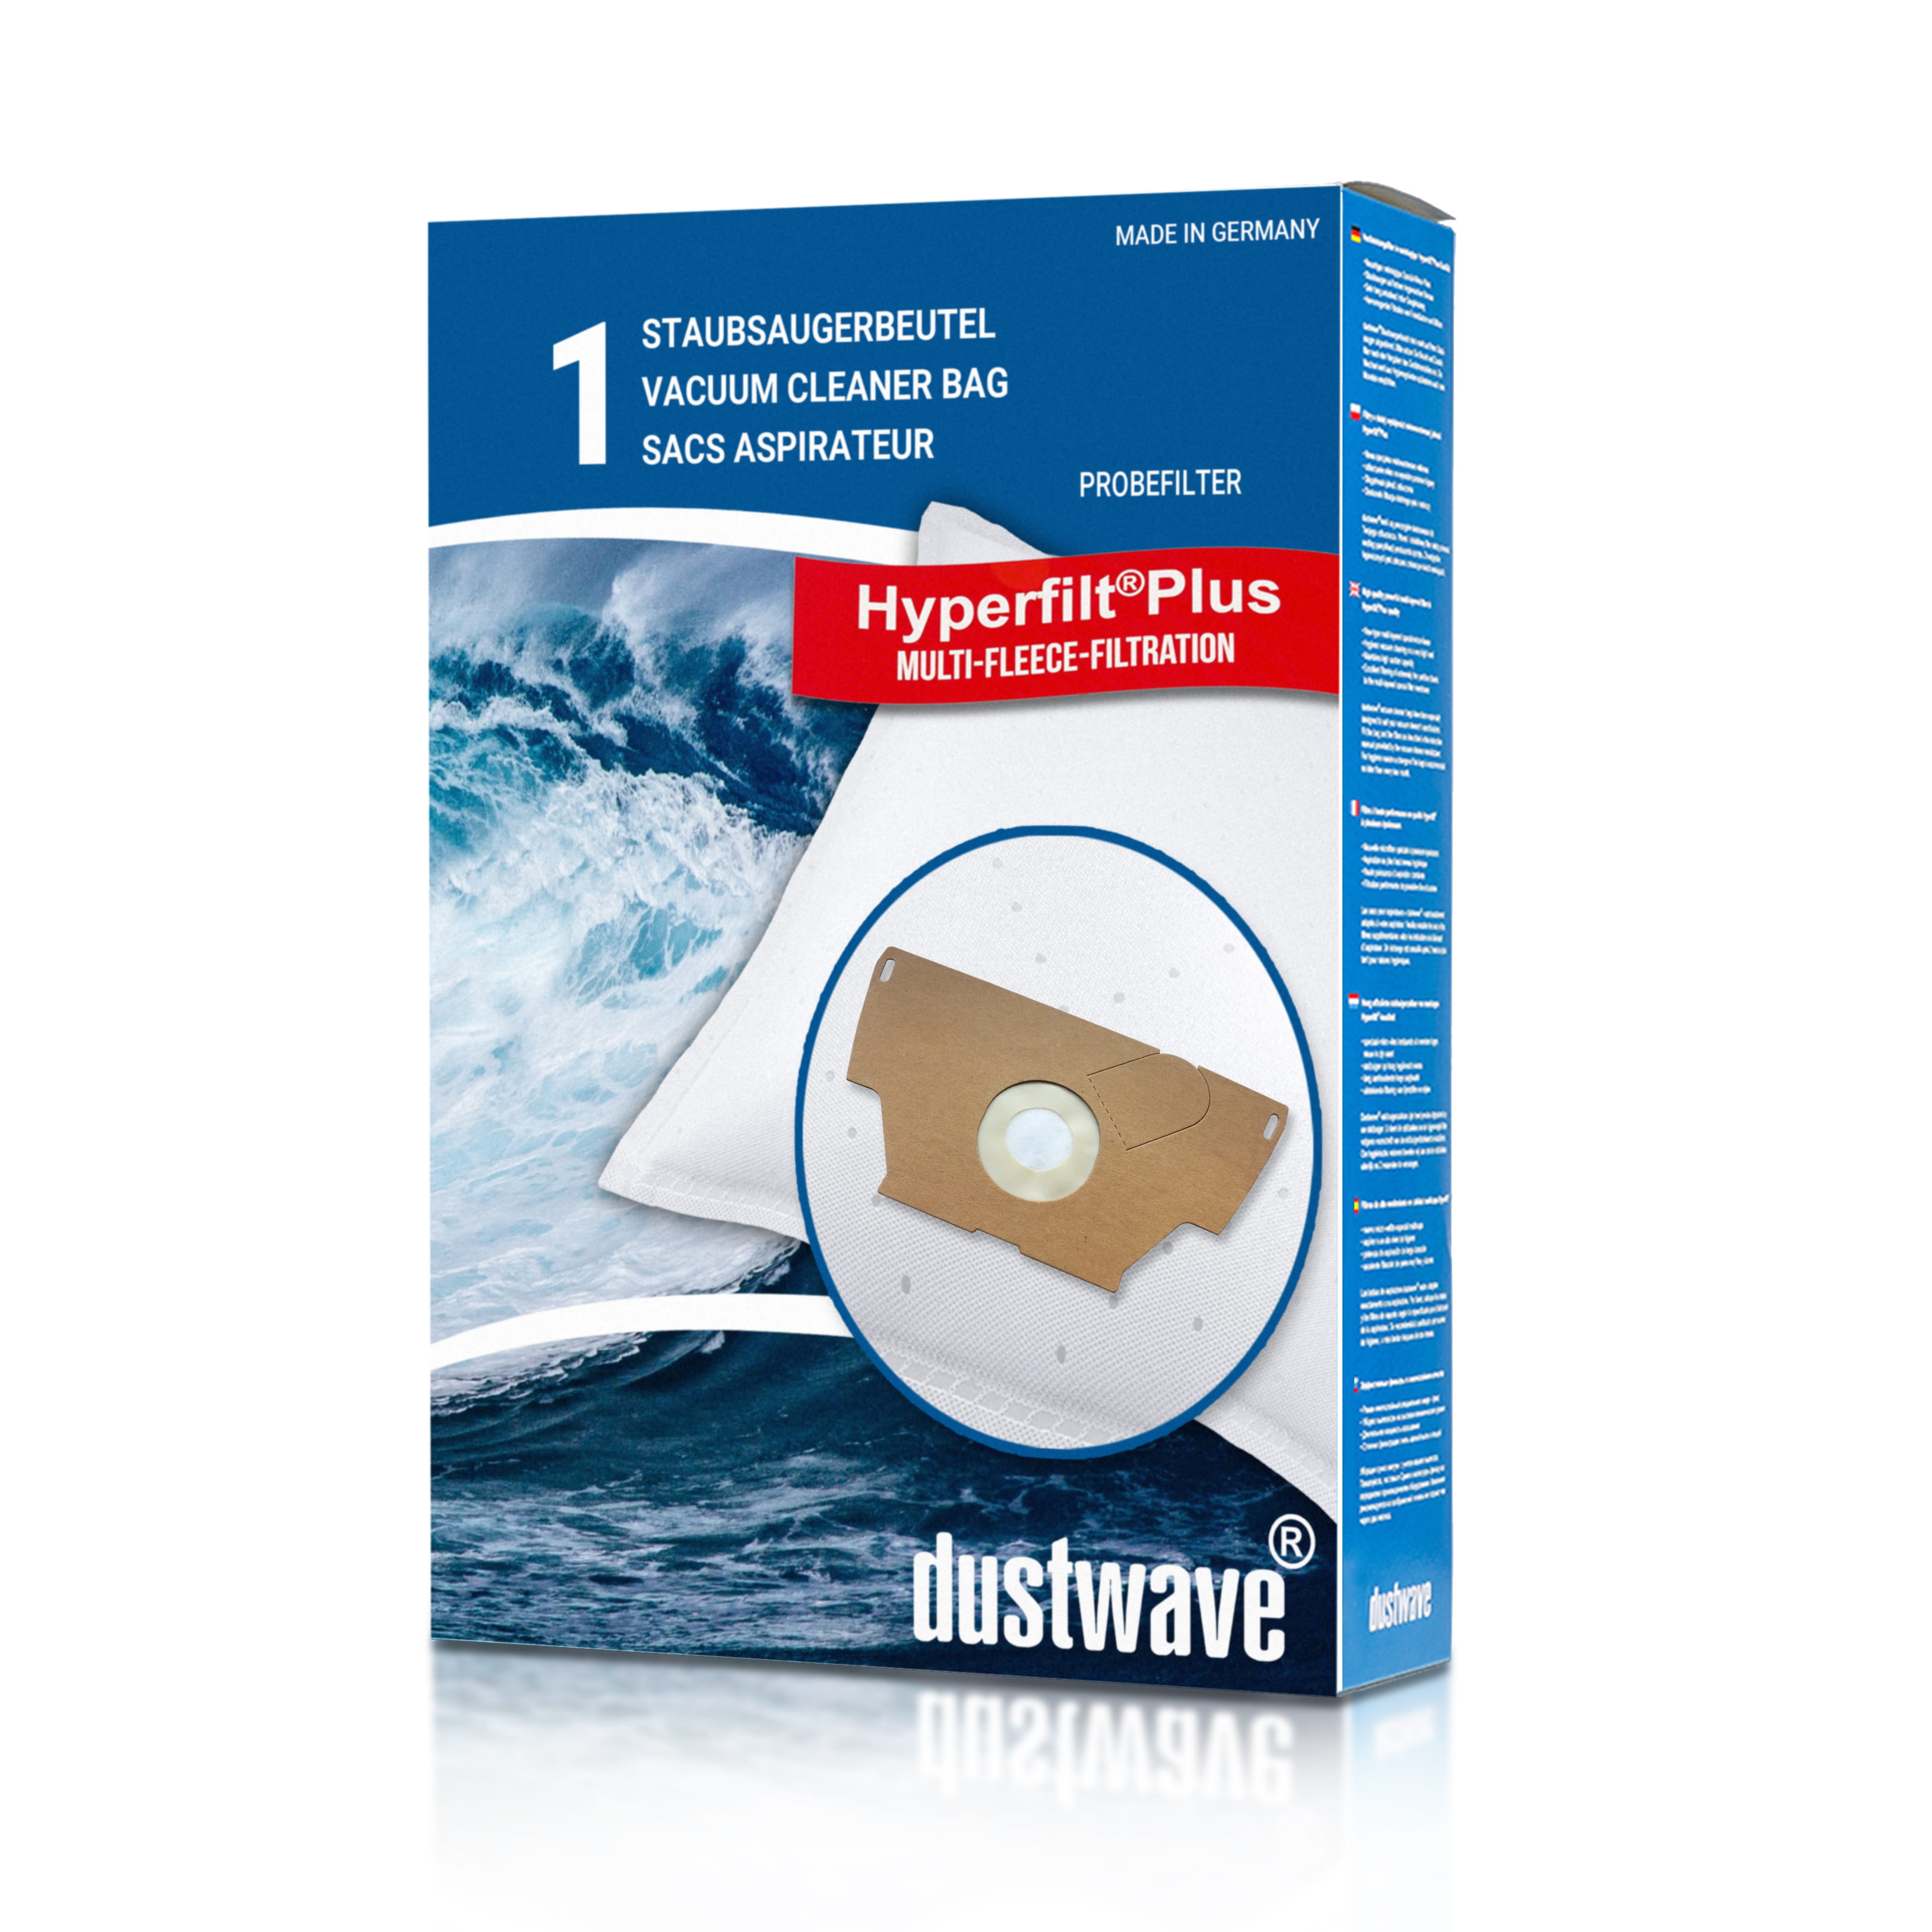 Dustwave® 1 Staubsaugerbeutel für Base BA 1200 / BA1200 - hocheffizient mit Hygieneverschluss - Made in Germany